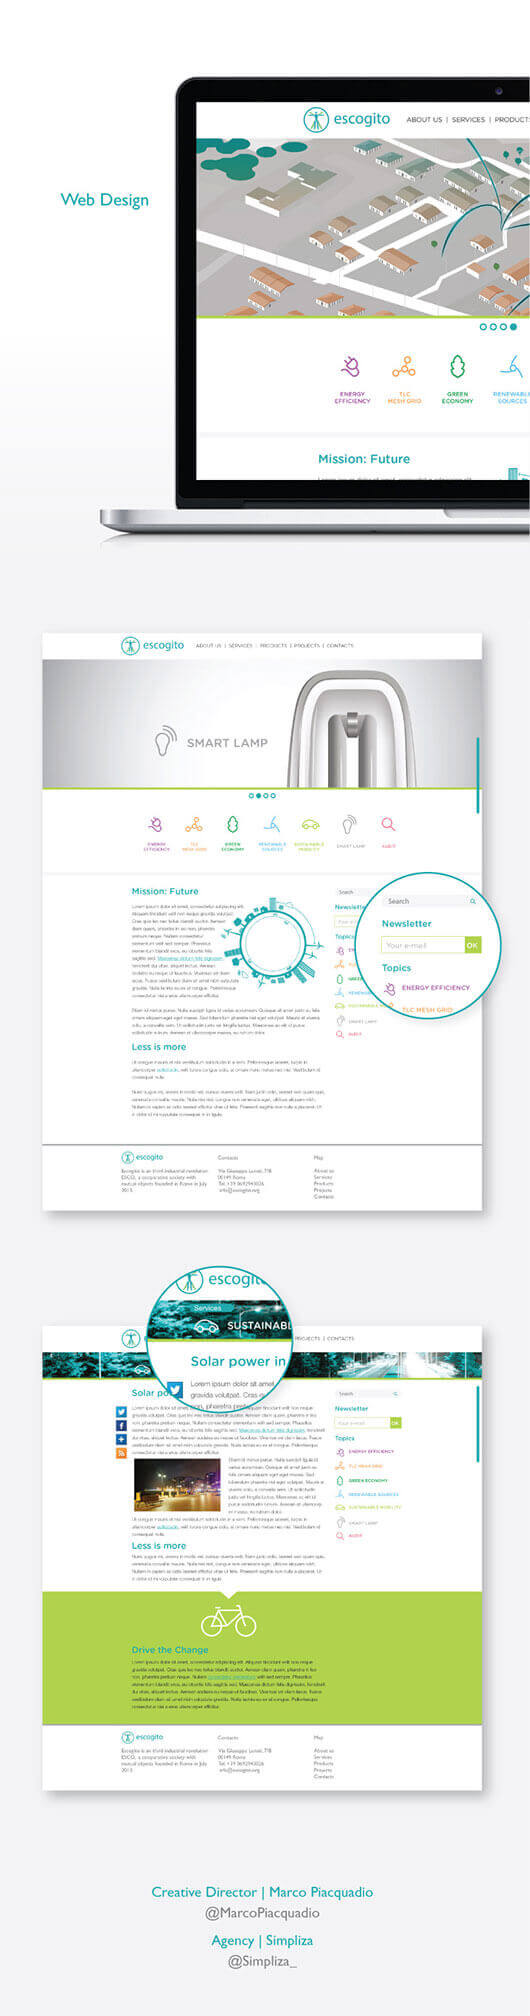 Presentazione branding brochure Escogito